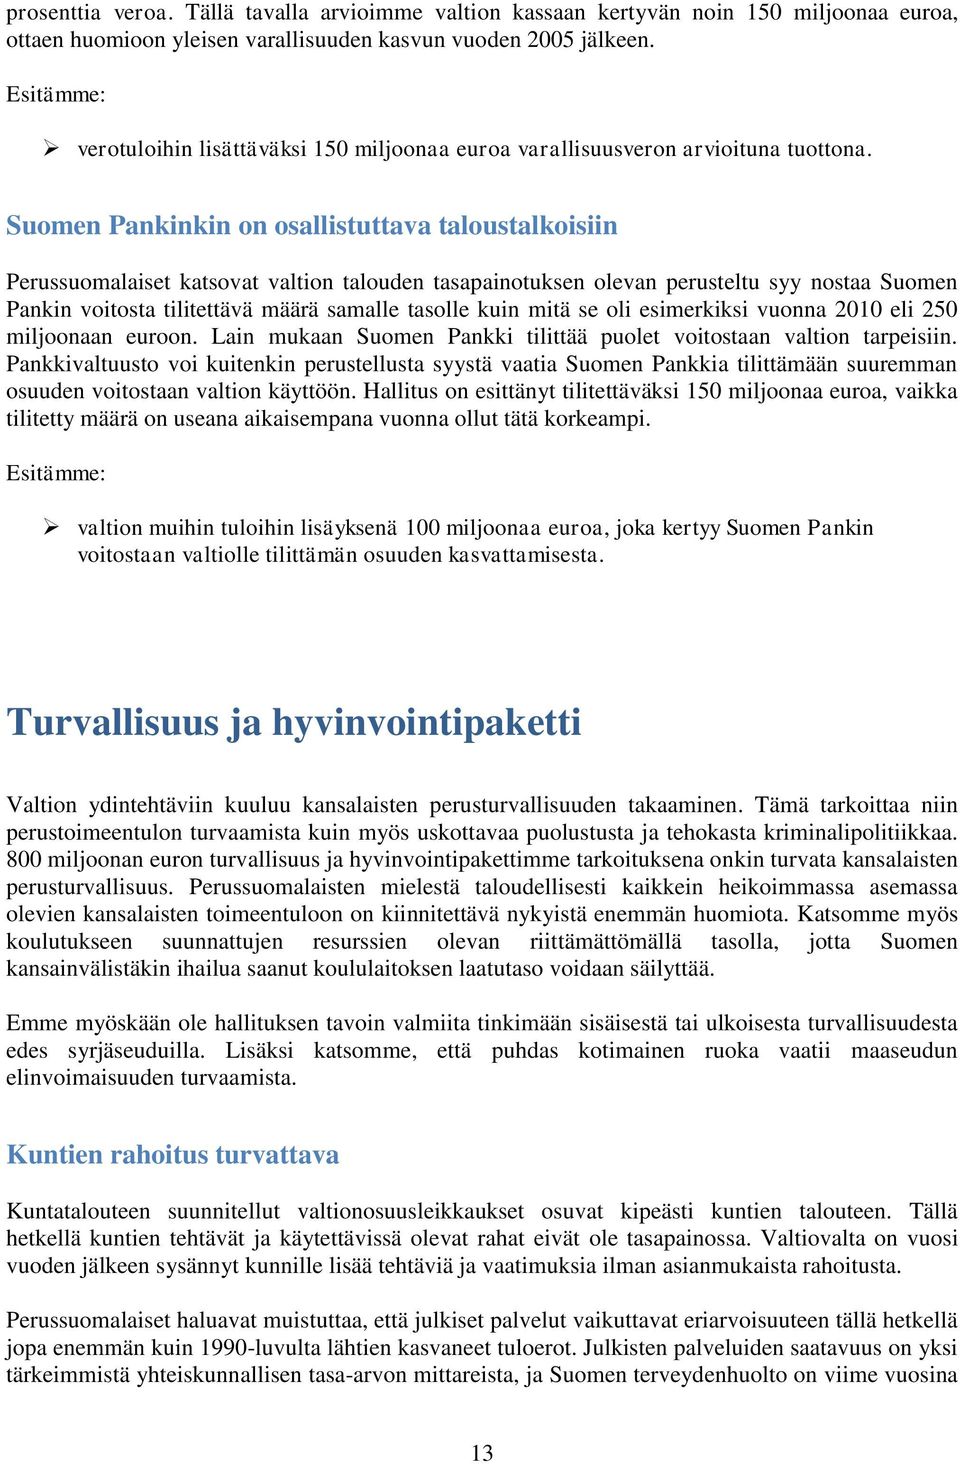 Suomen Pankinkin on osallistuttava taloustalkoisiin Perussuomalaiset katsovat valtion talouden tasapainotuksen olevan perusteltu syy nostaa Suomen Pankin voitosta tilitettävä määrä samalle tasolle